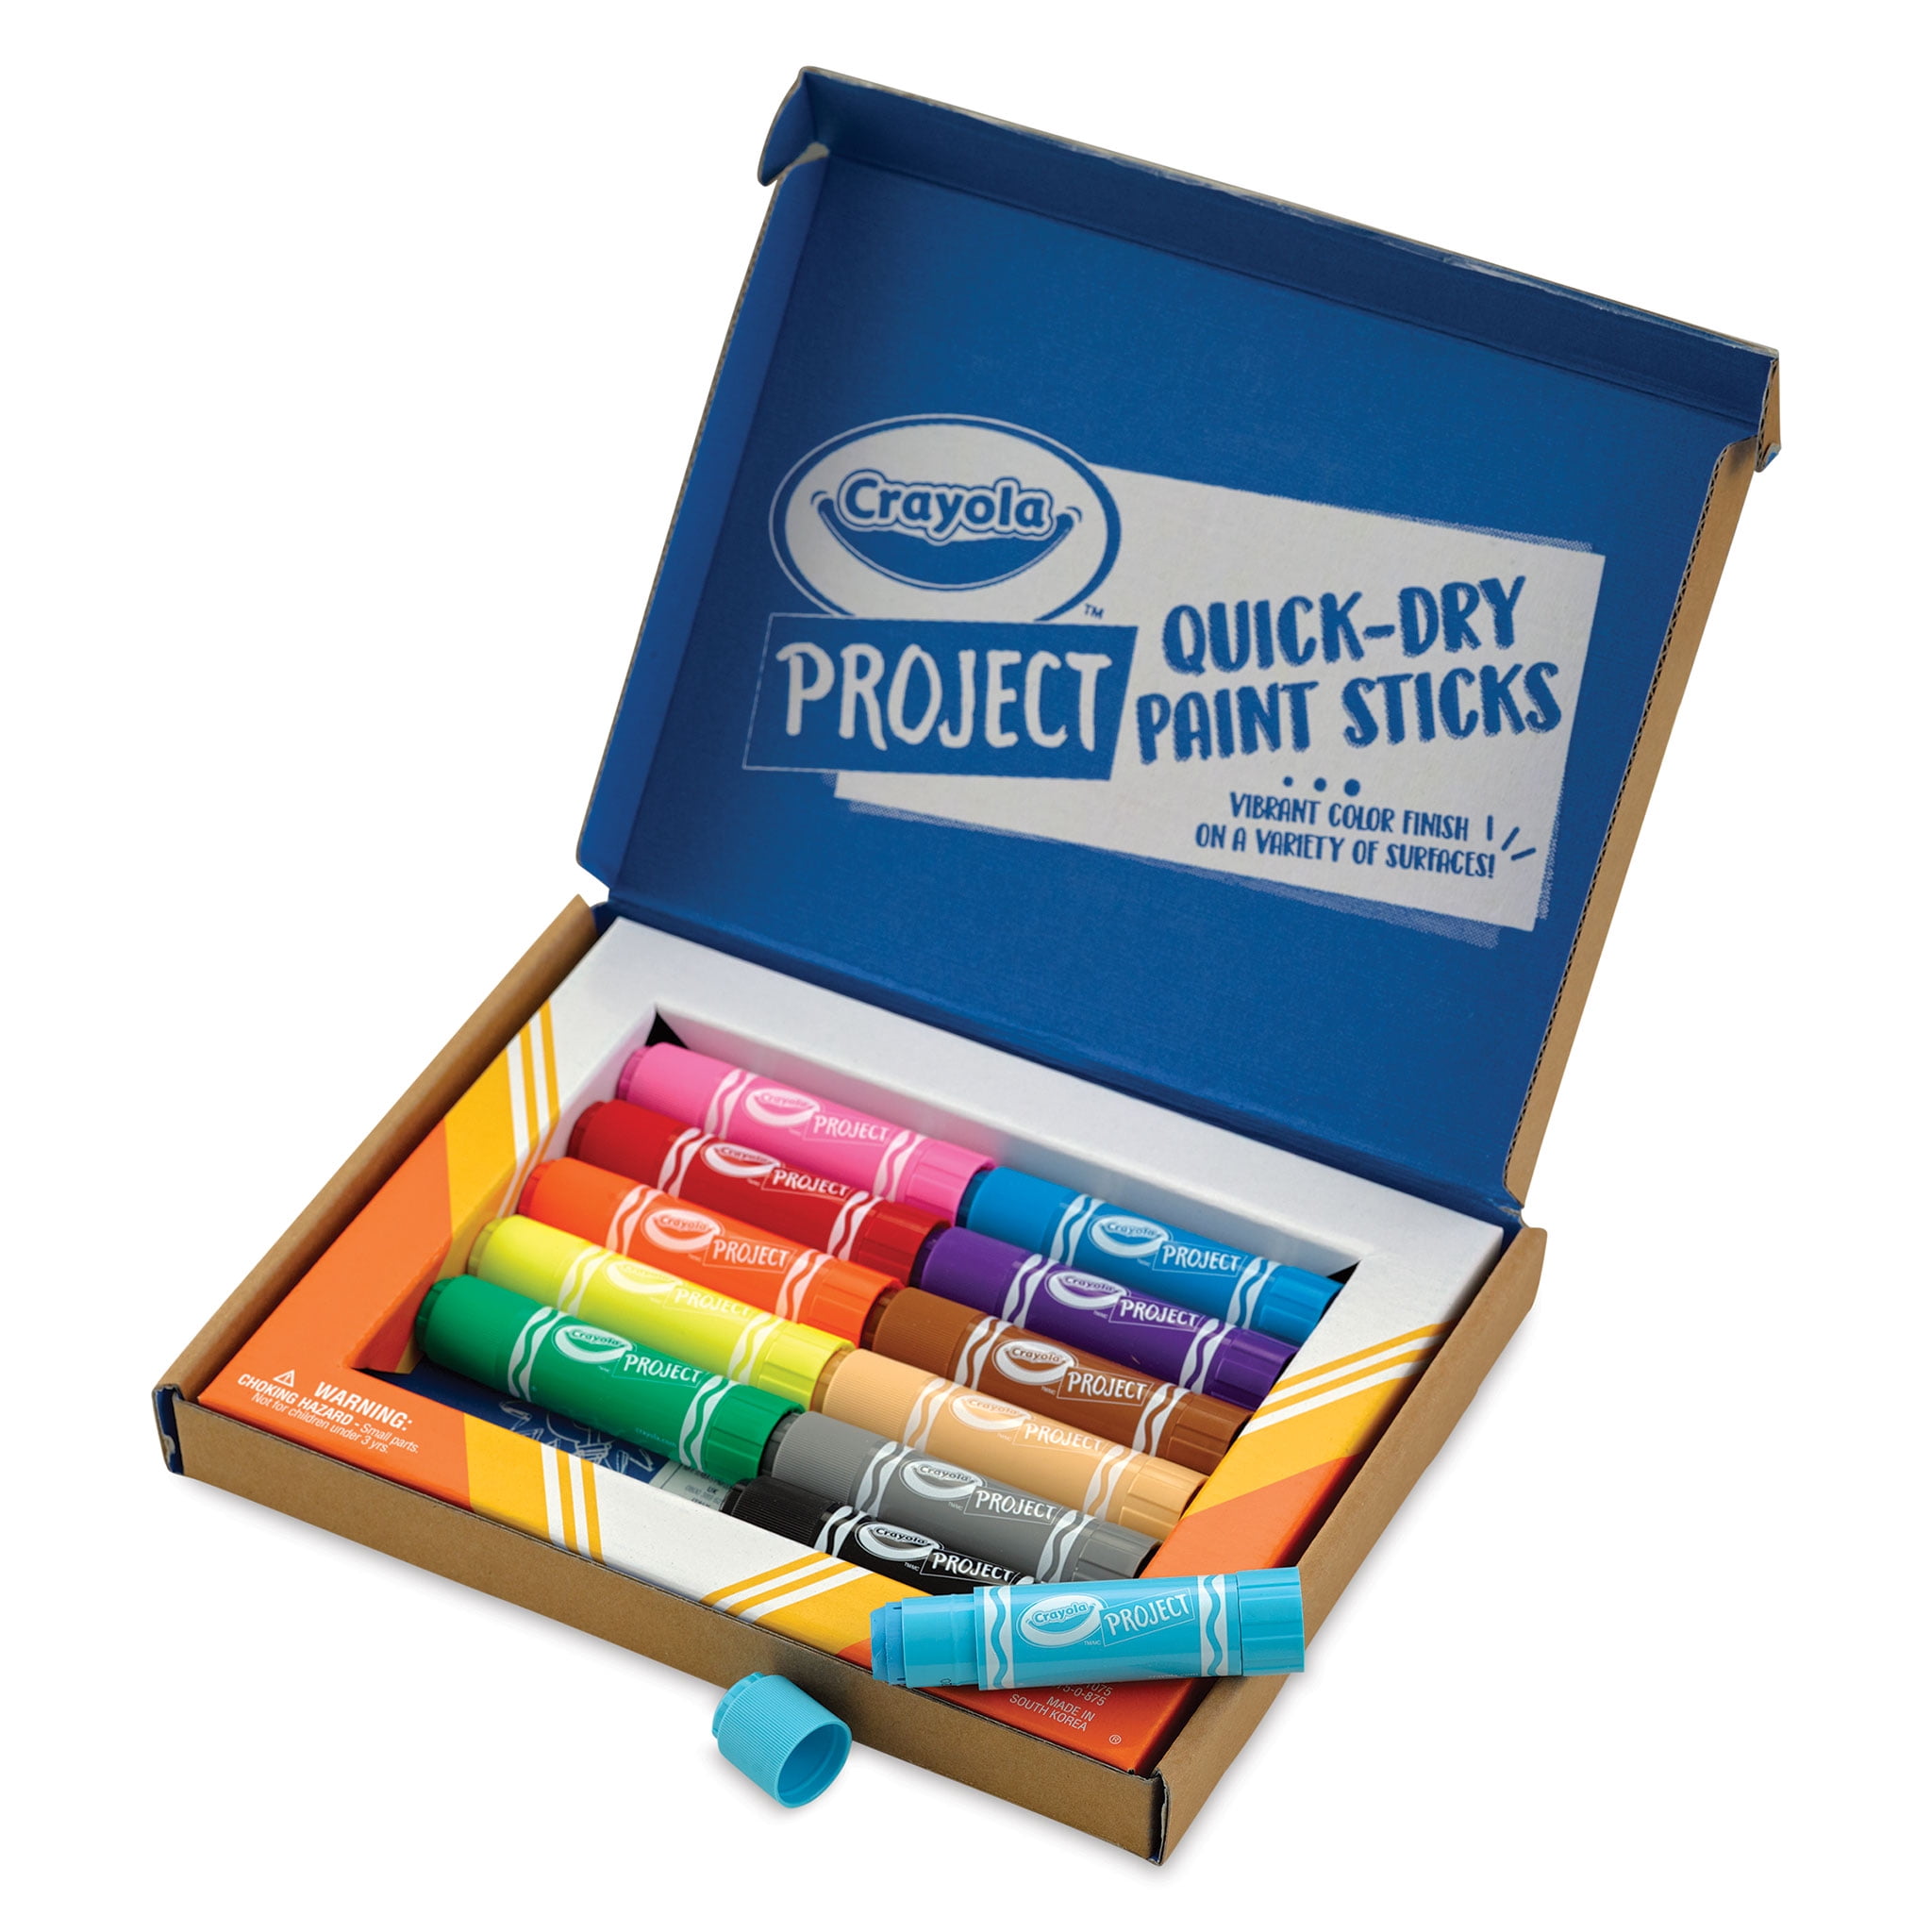 Acheter Quick-dry Paint Sticks - Paintings - Crayola - Le Nuage de